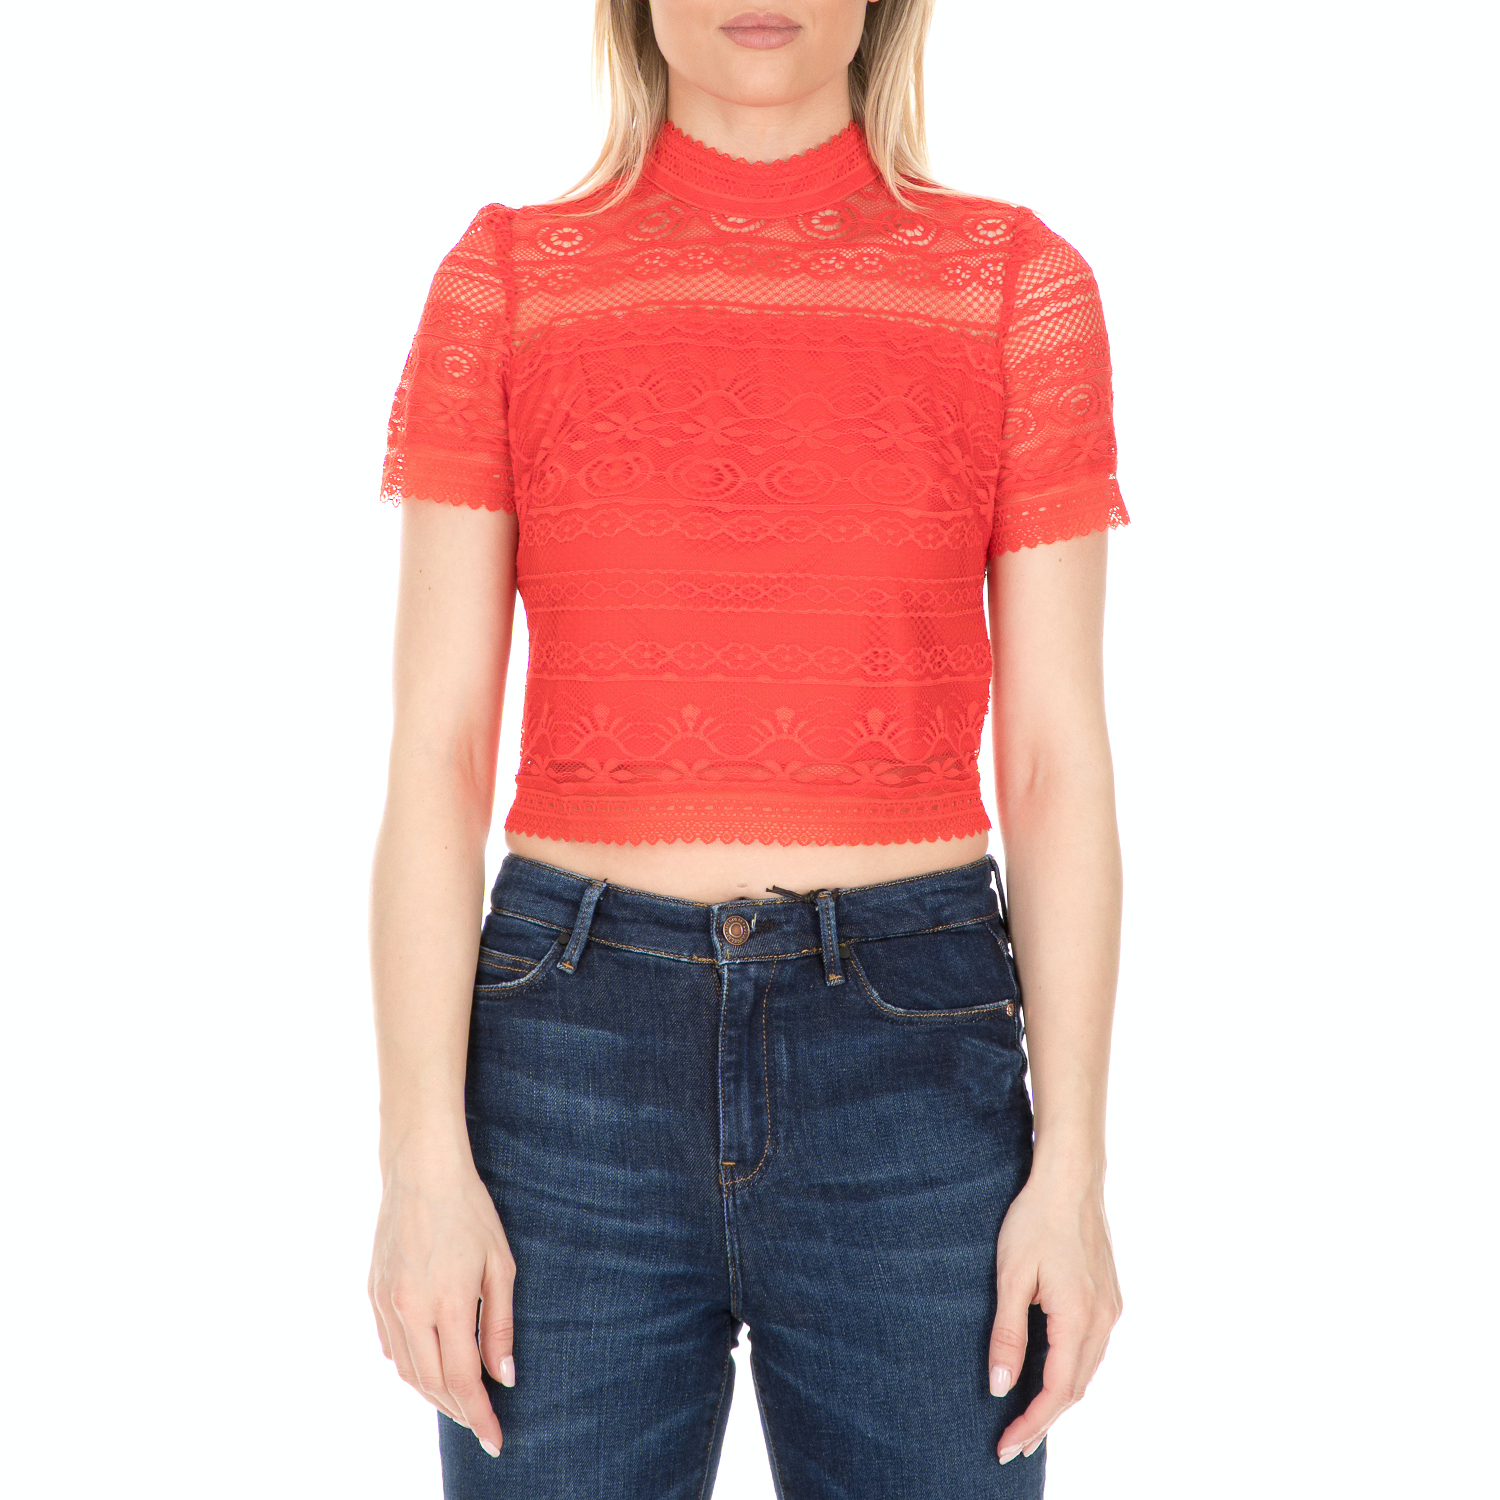 Γυναικεία/Ρούχα/Μπλούζες/Τοπ GUESS - Γυναικείο τοπ GUESS ADELAIDE πορτοκαλί